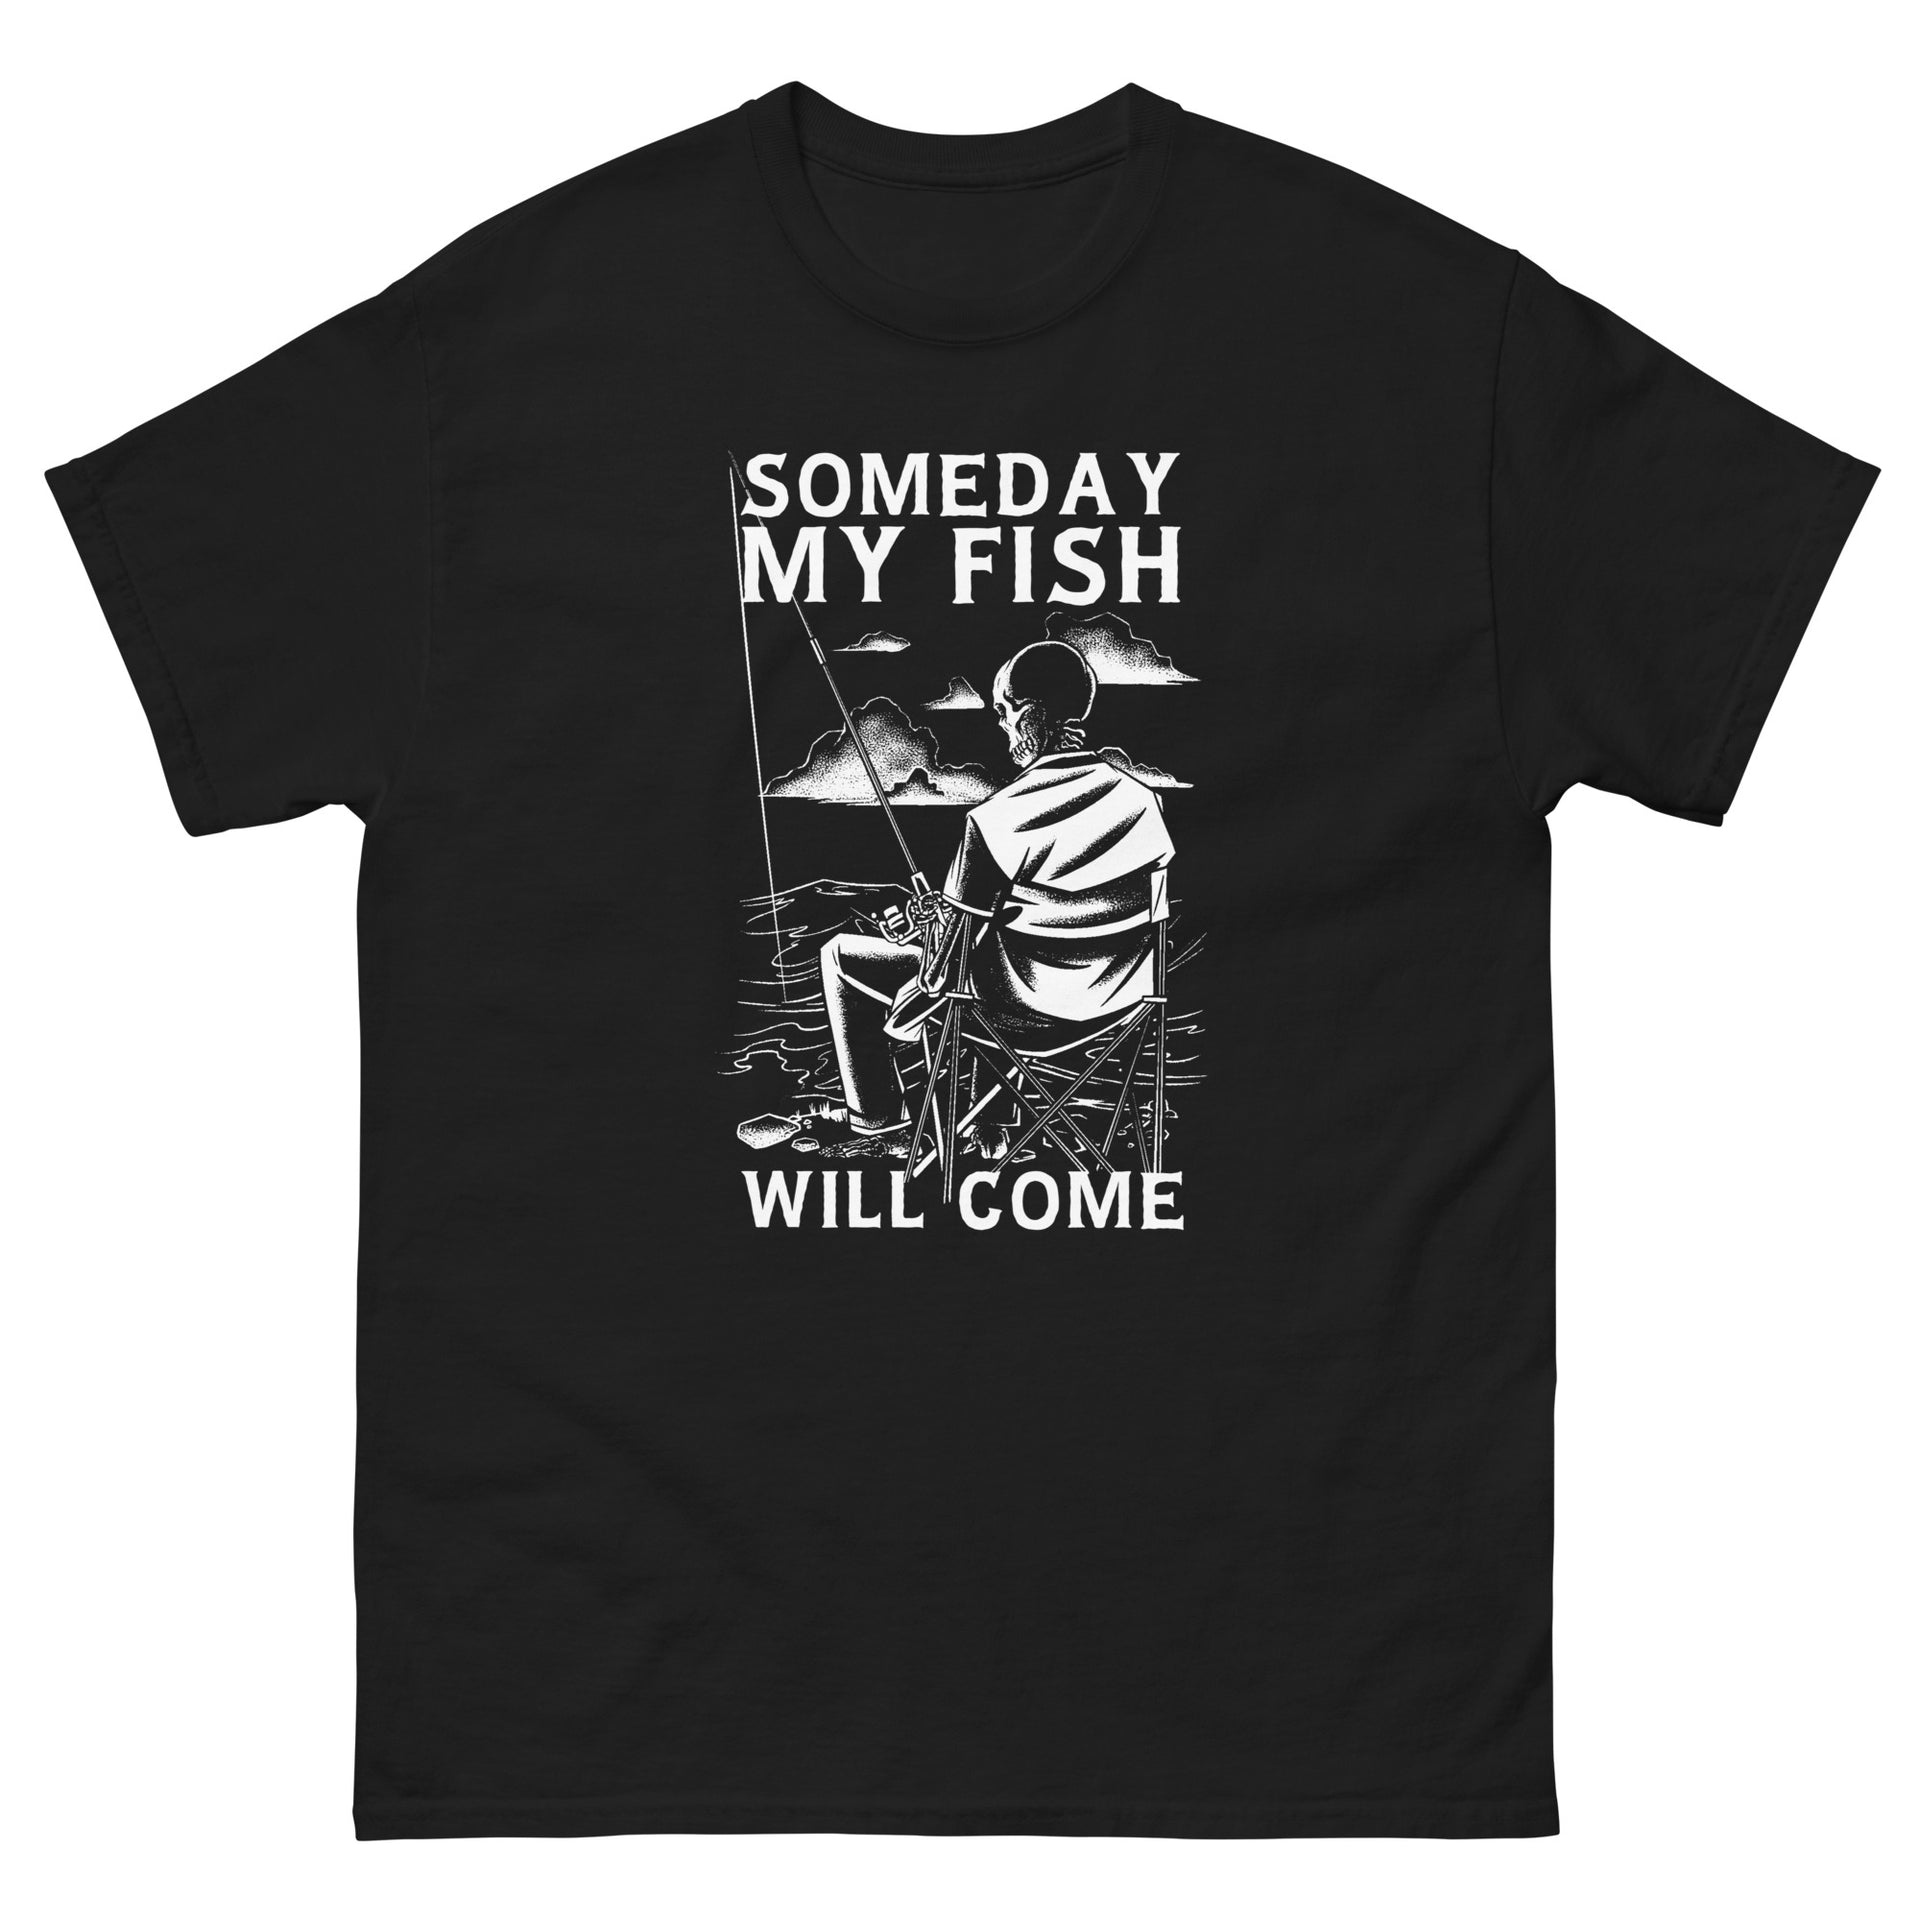 Fishing makes me happy' Men's T-Shirt